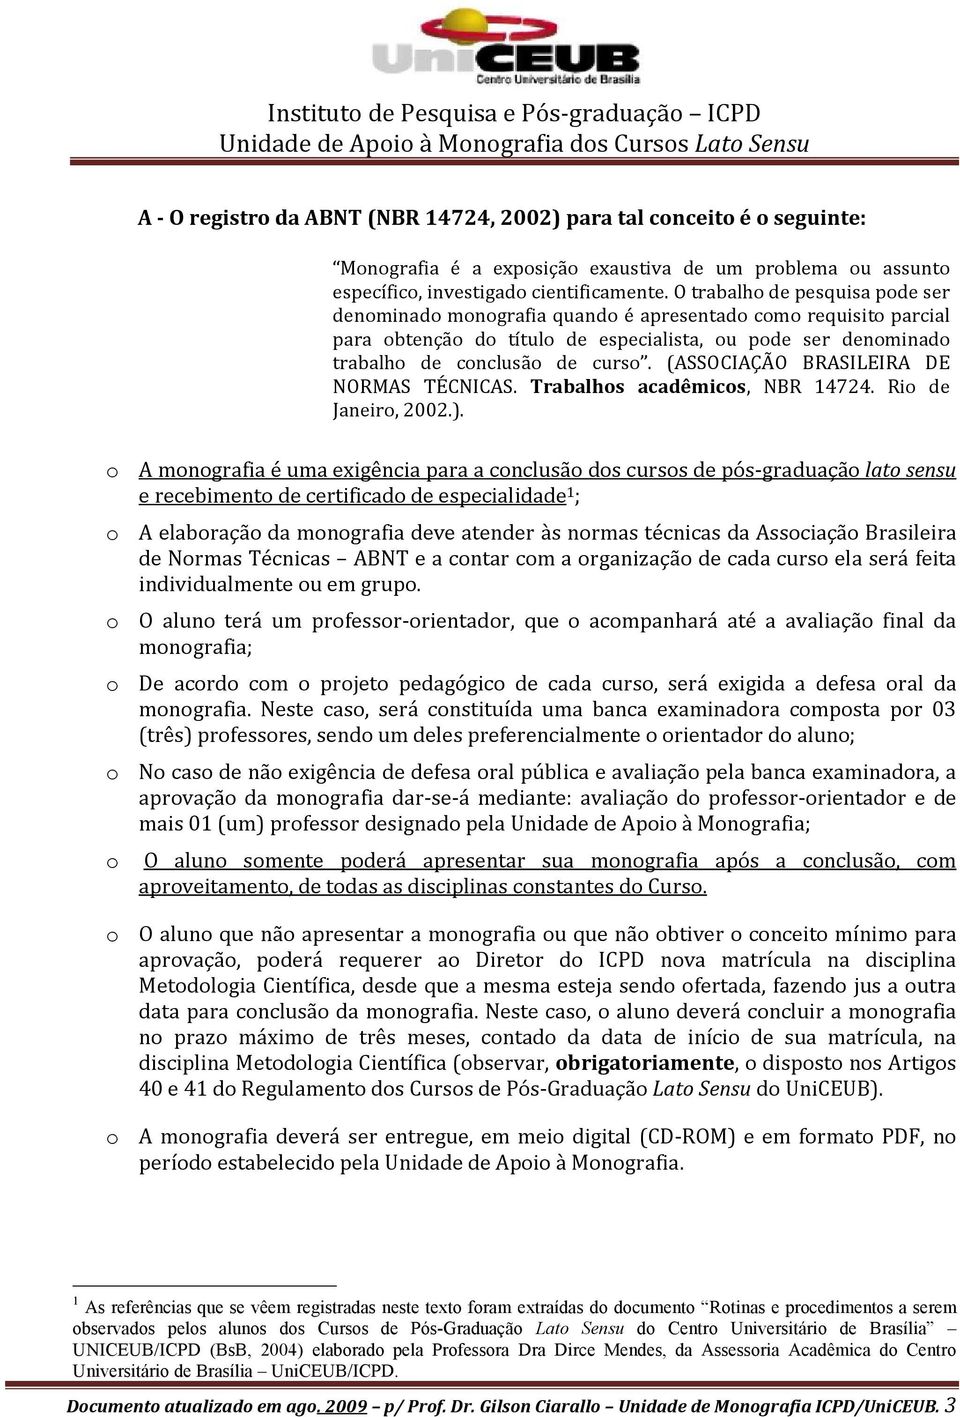 (ASSOCIAÇÃO BRASILEIRA DE NORMAS TÉCNICAS. Trabalhos acadêmicos, NBR 14724. Rio de Janeiro, 2002.).